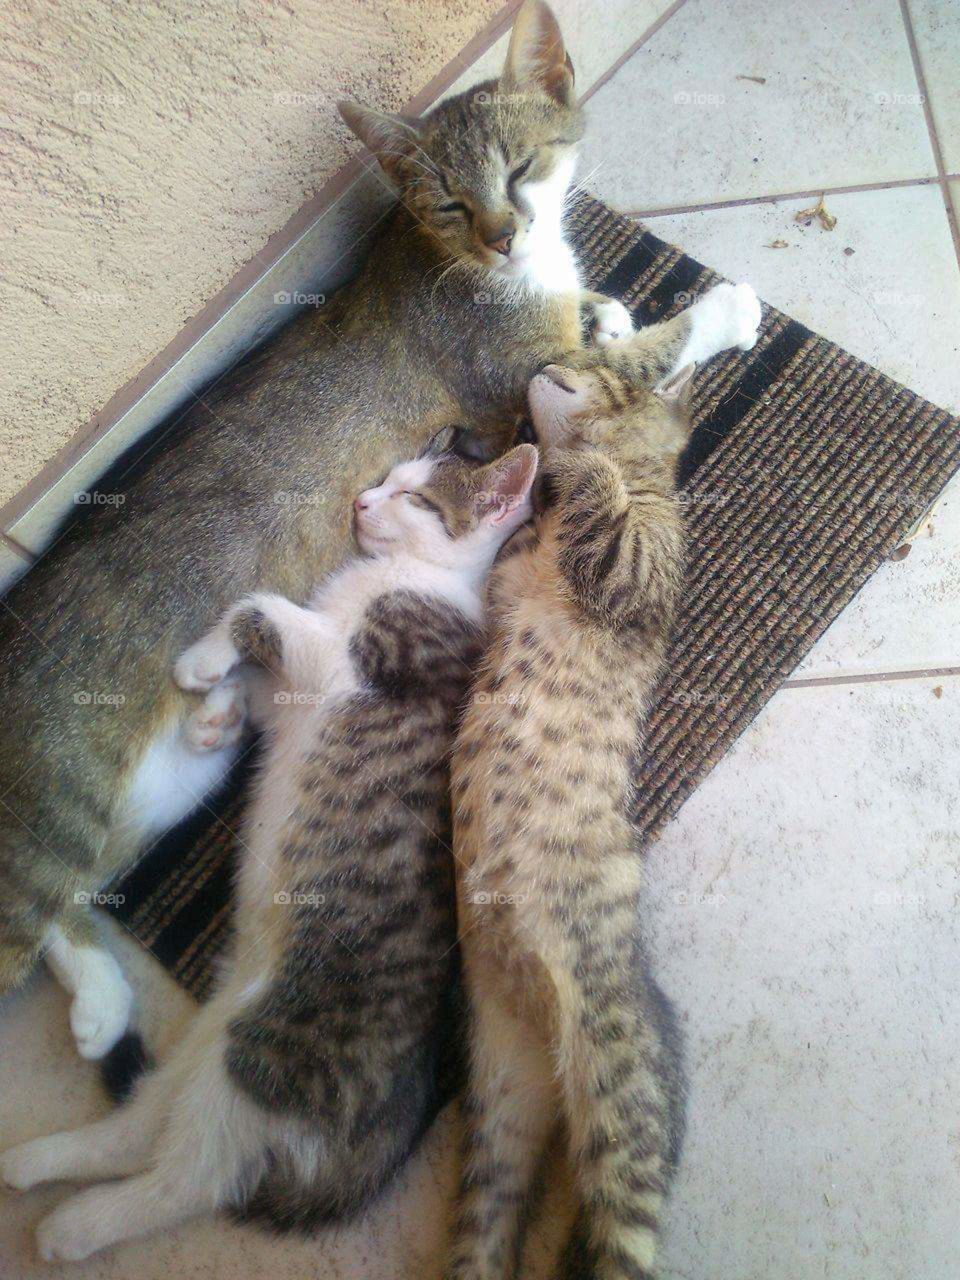 Spooning kitties